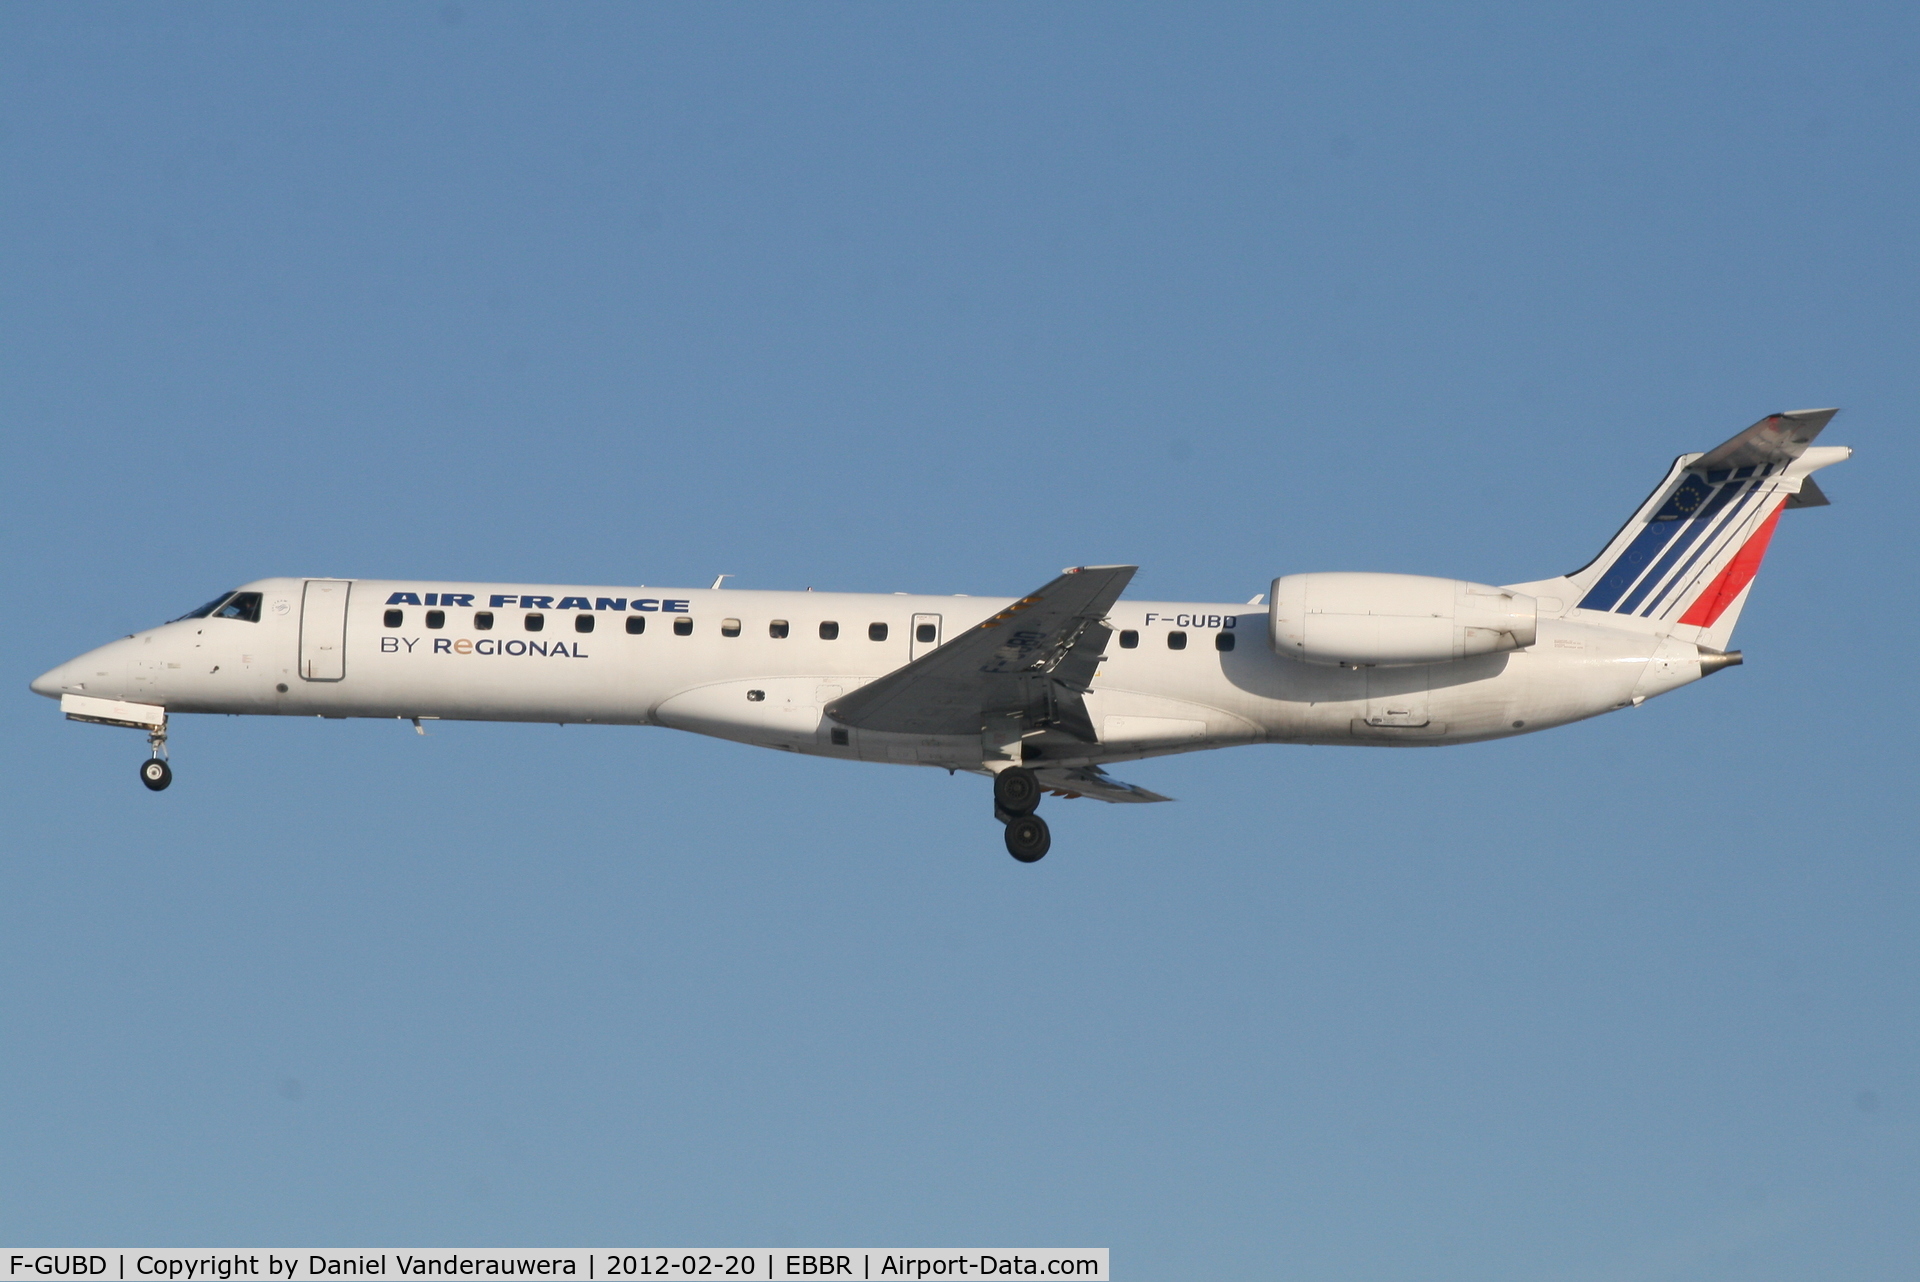 F-GUBD, 2000 Embraer ERJ-145LR (EMB-145LR) C/N 145333, Arrival of flight AF5402 to RWY 25L